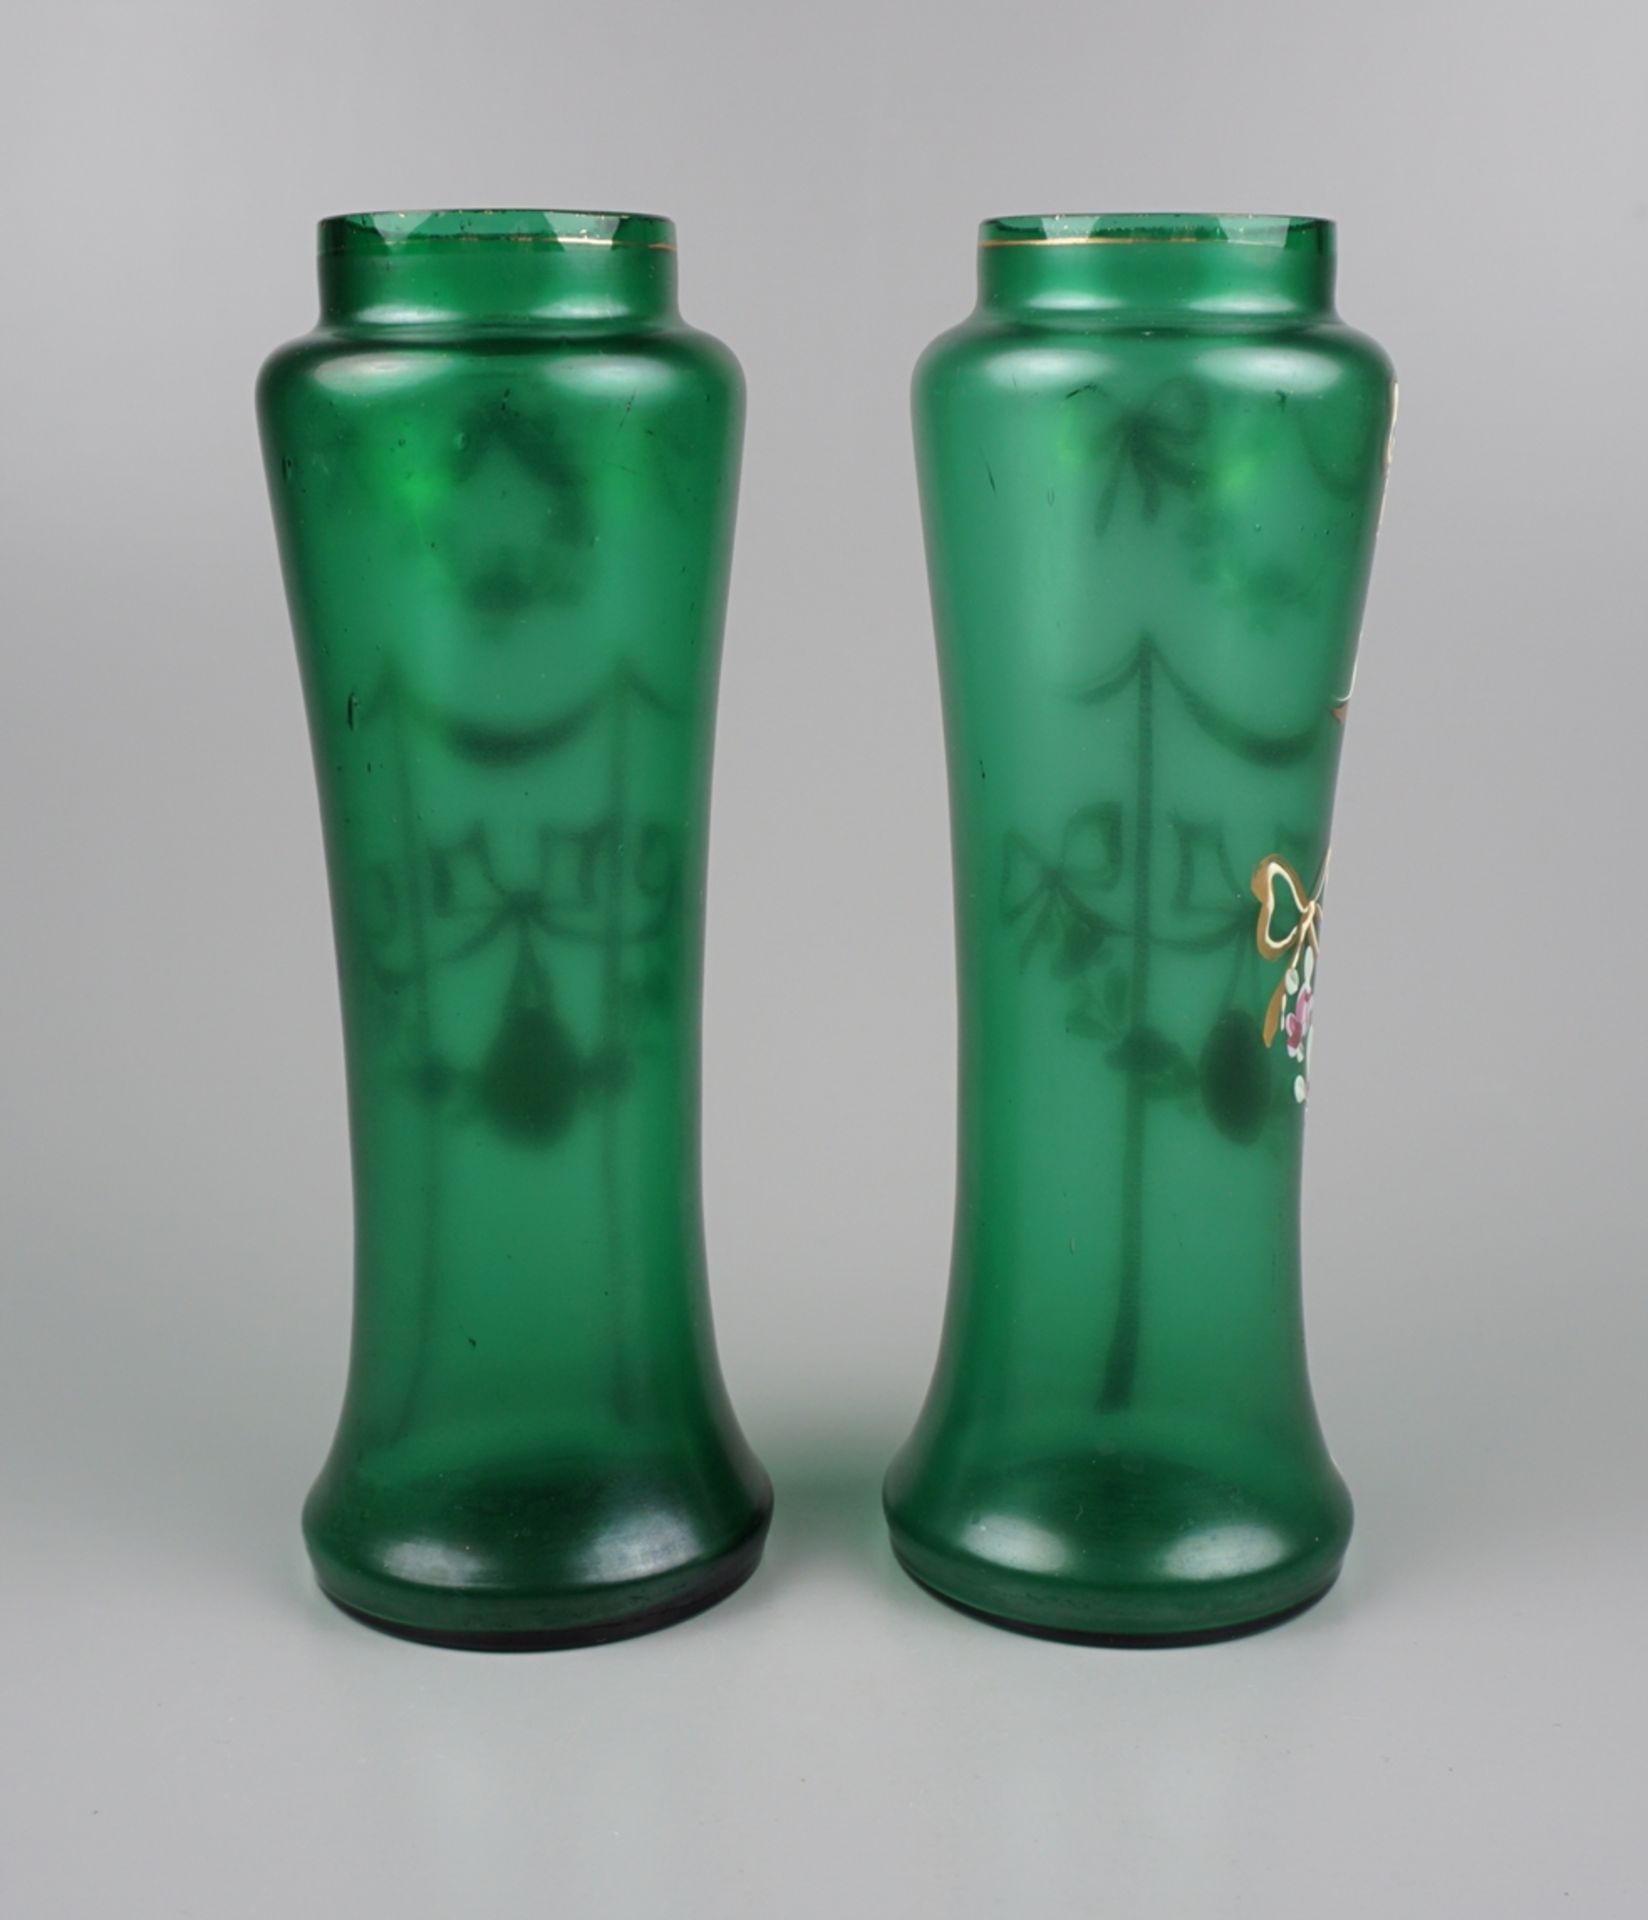 Paar Vasen aus Grünglas mit Emaille-Malerei, Jugendstil, um 1900, H.15,8cm - Image 2 of 2